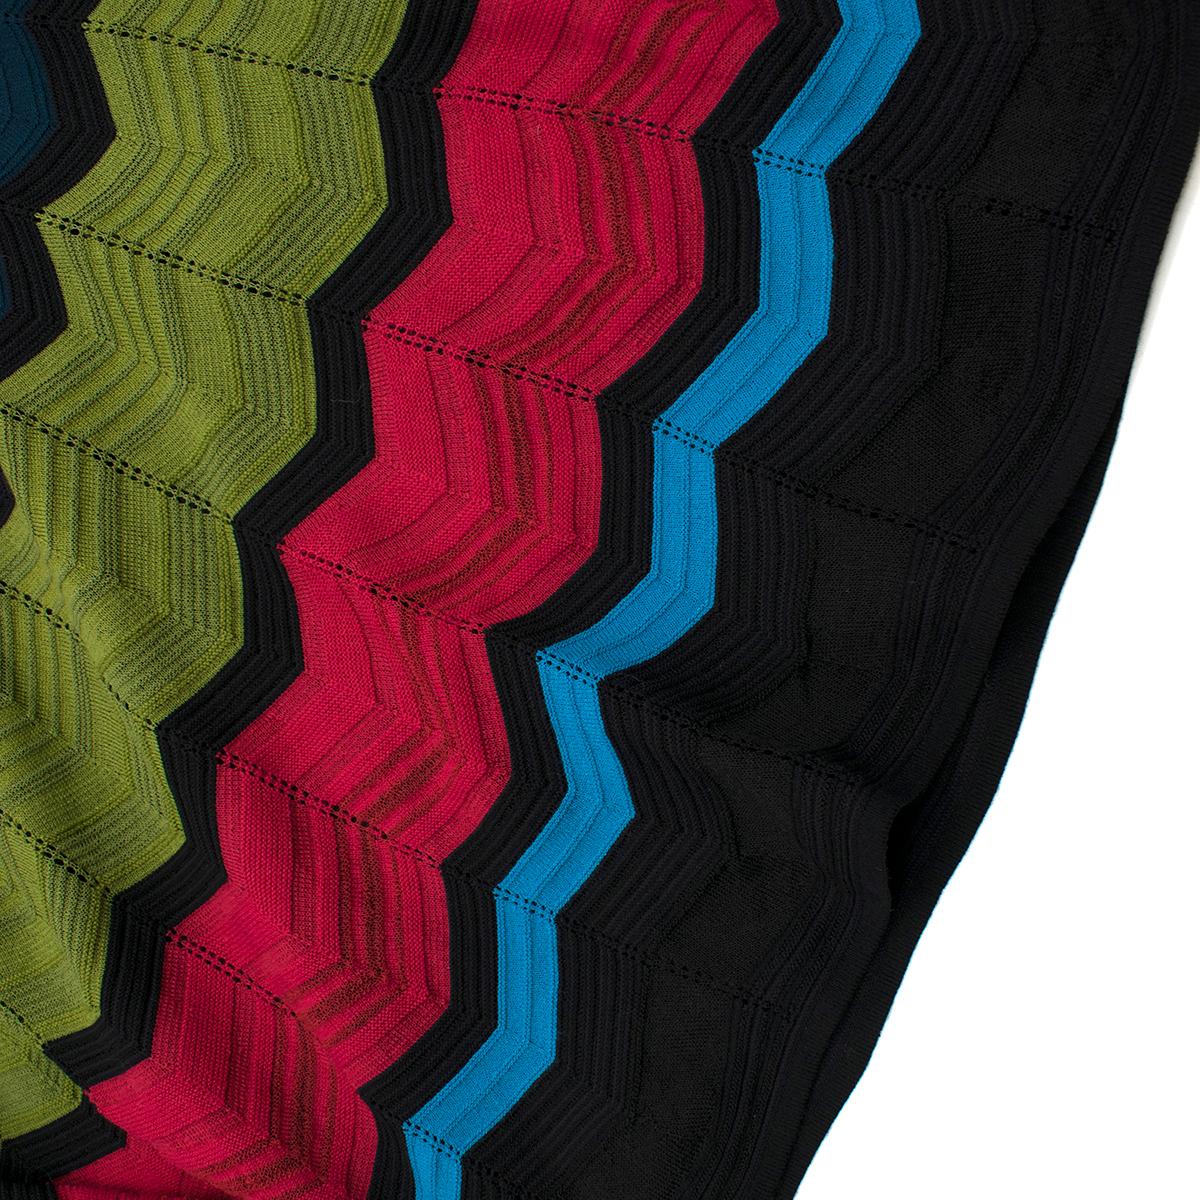 M Missoni Multicolor Knit A-line Dress Size IT 38 / US 0-2 2